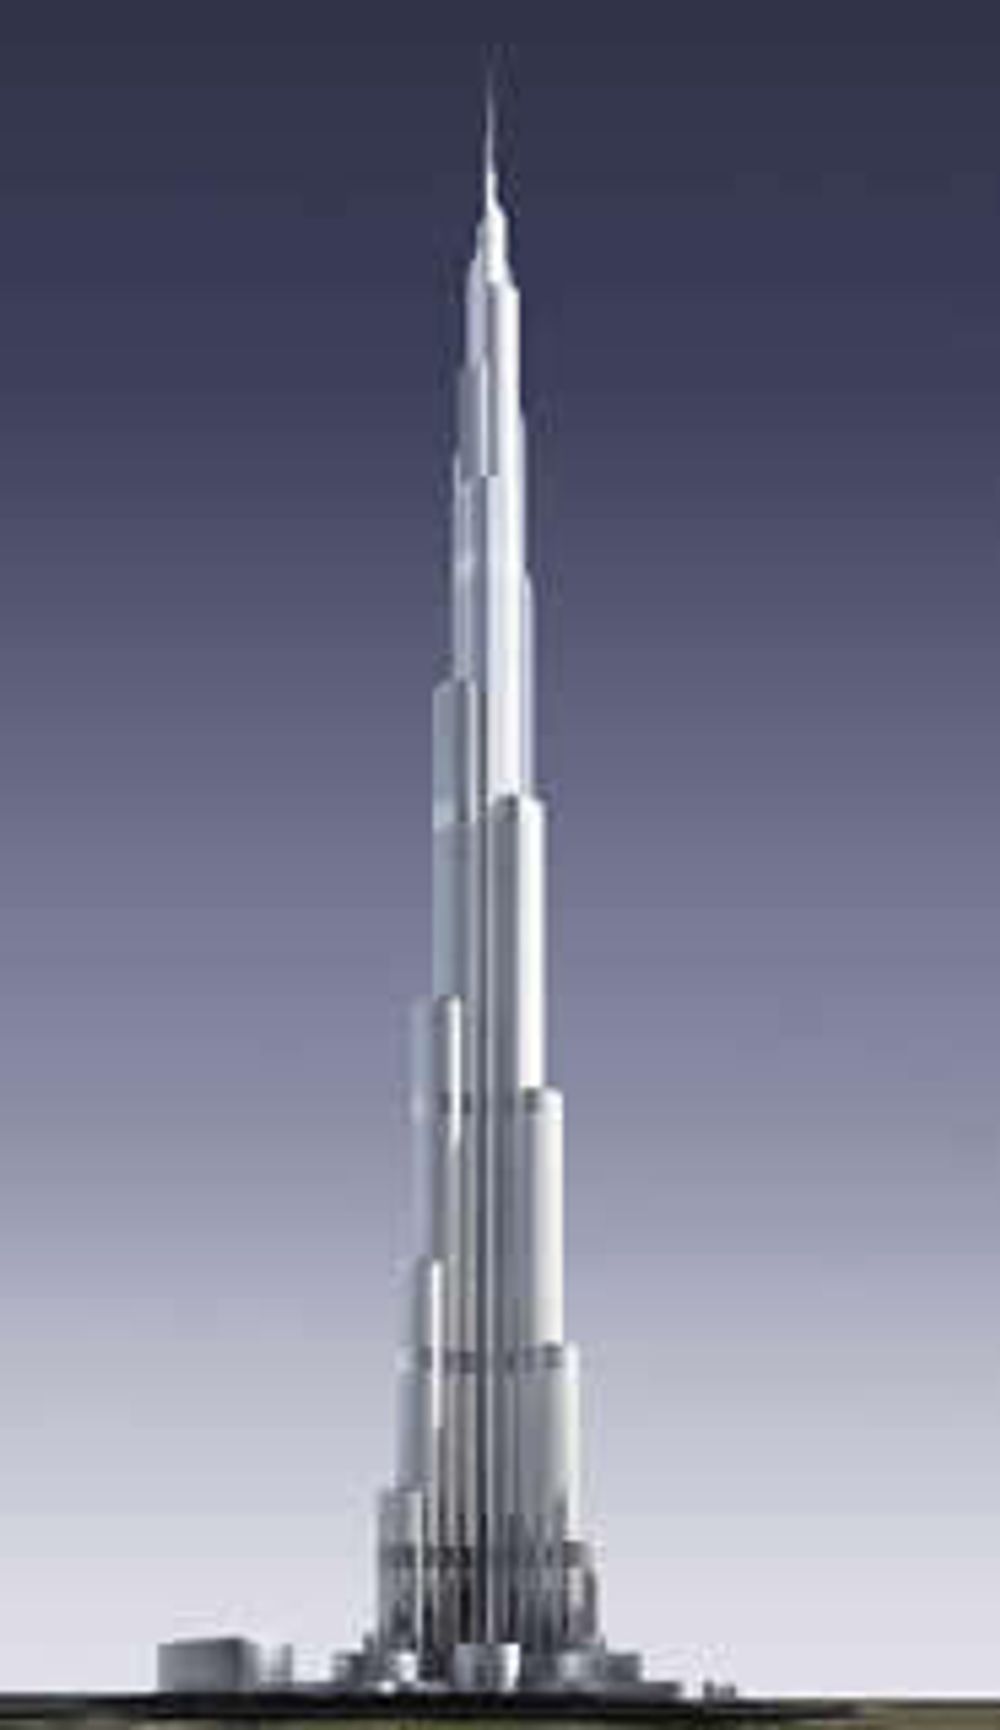 Burj Dubai Tower i De forente arabiske emirater blir verdens høyeste når det står ferdig i 2009, 160 etasjer - 705 meter. ILL: Skidmore, Owings & Merrill (SOM)